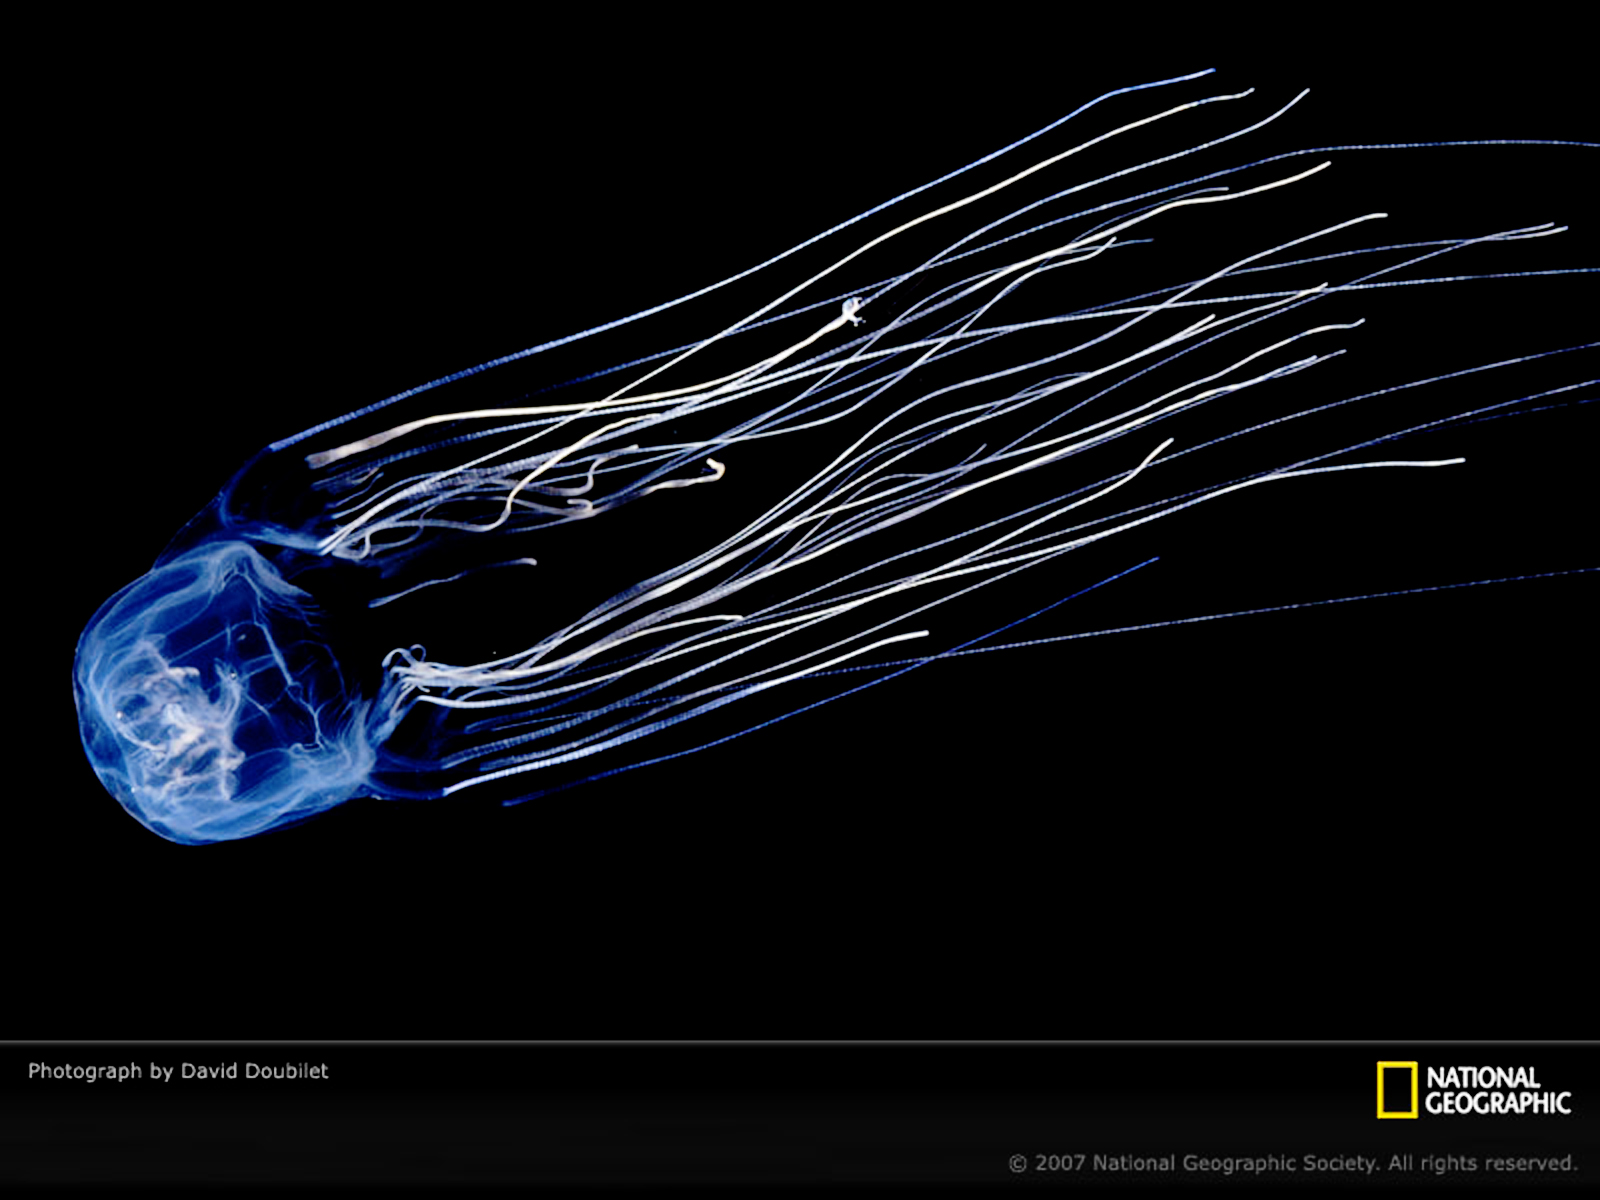 http://3.bp.blogspot.com/-V3wSJAfBZBE/TorMAIR7DoI/AAAAAAAADWM/hj1NQUmTFuI/s1600/Jellyfish_National_Geographic_Photo_Vvallpaper.Net.jpg